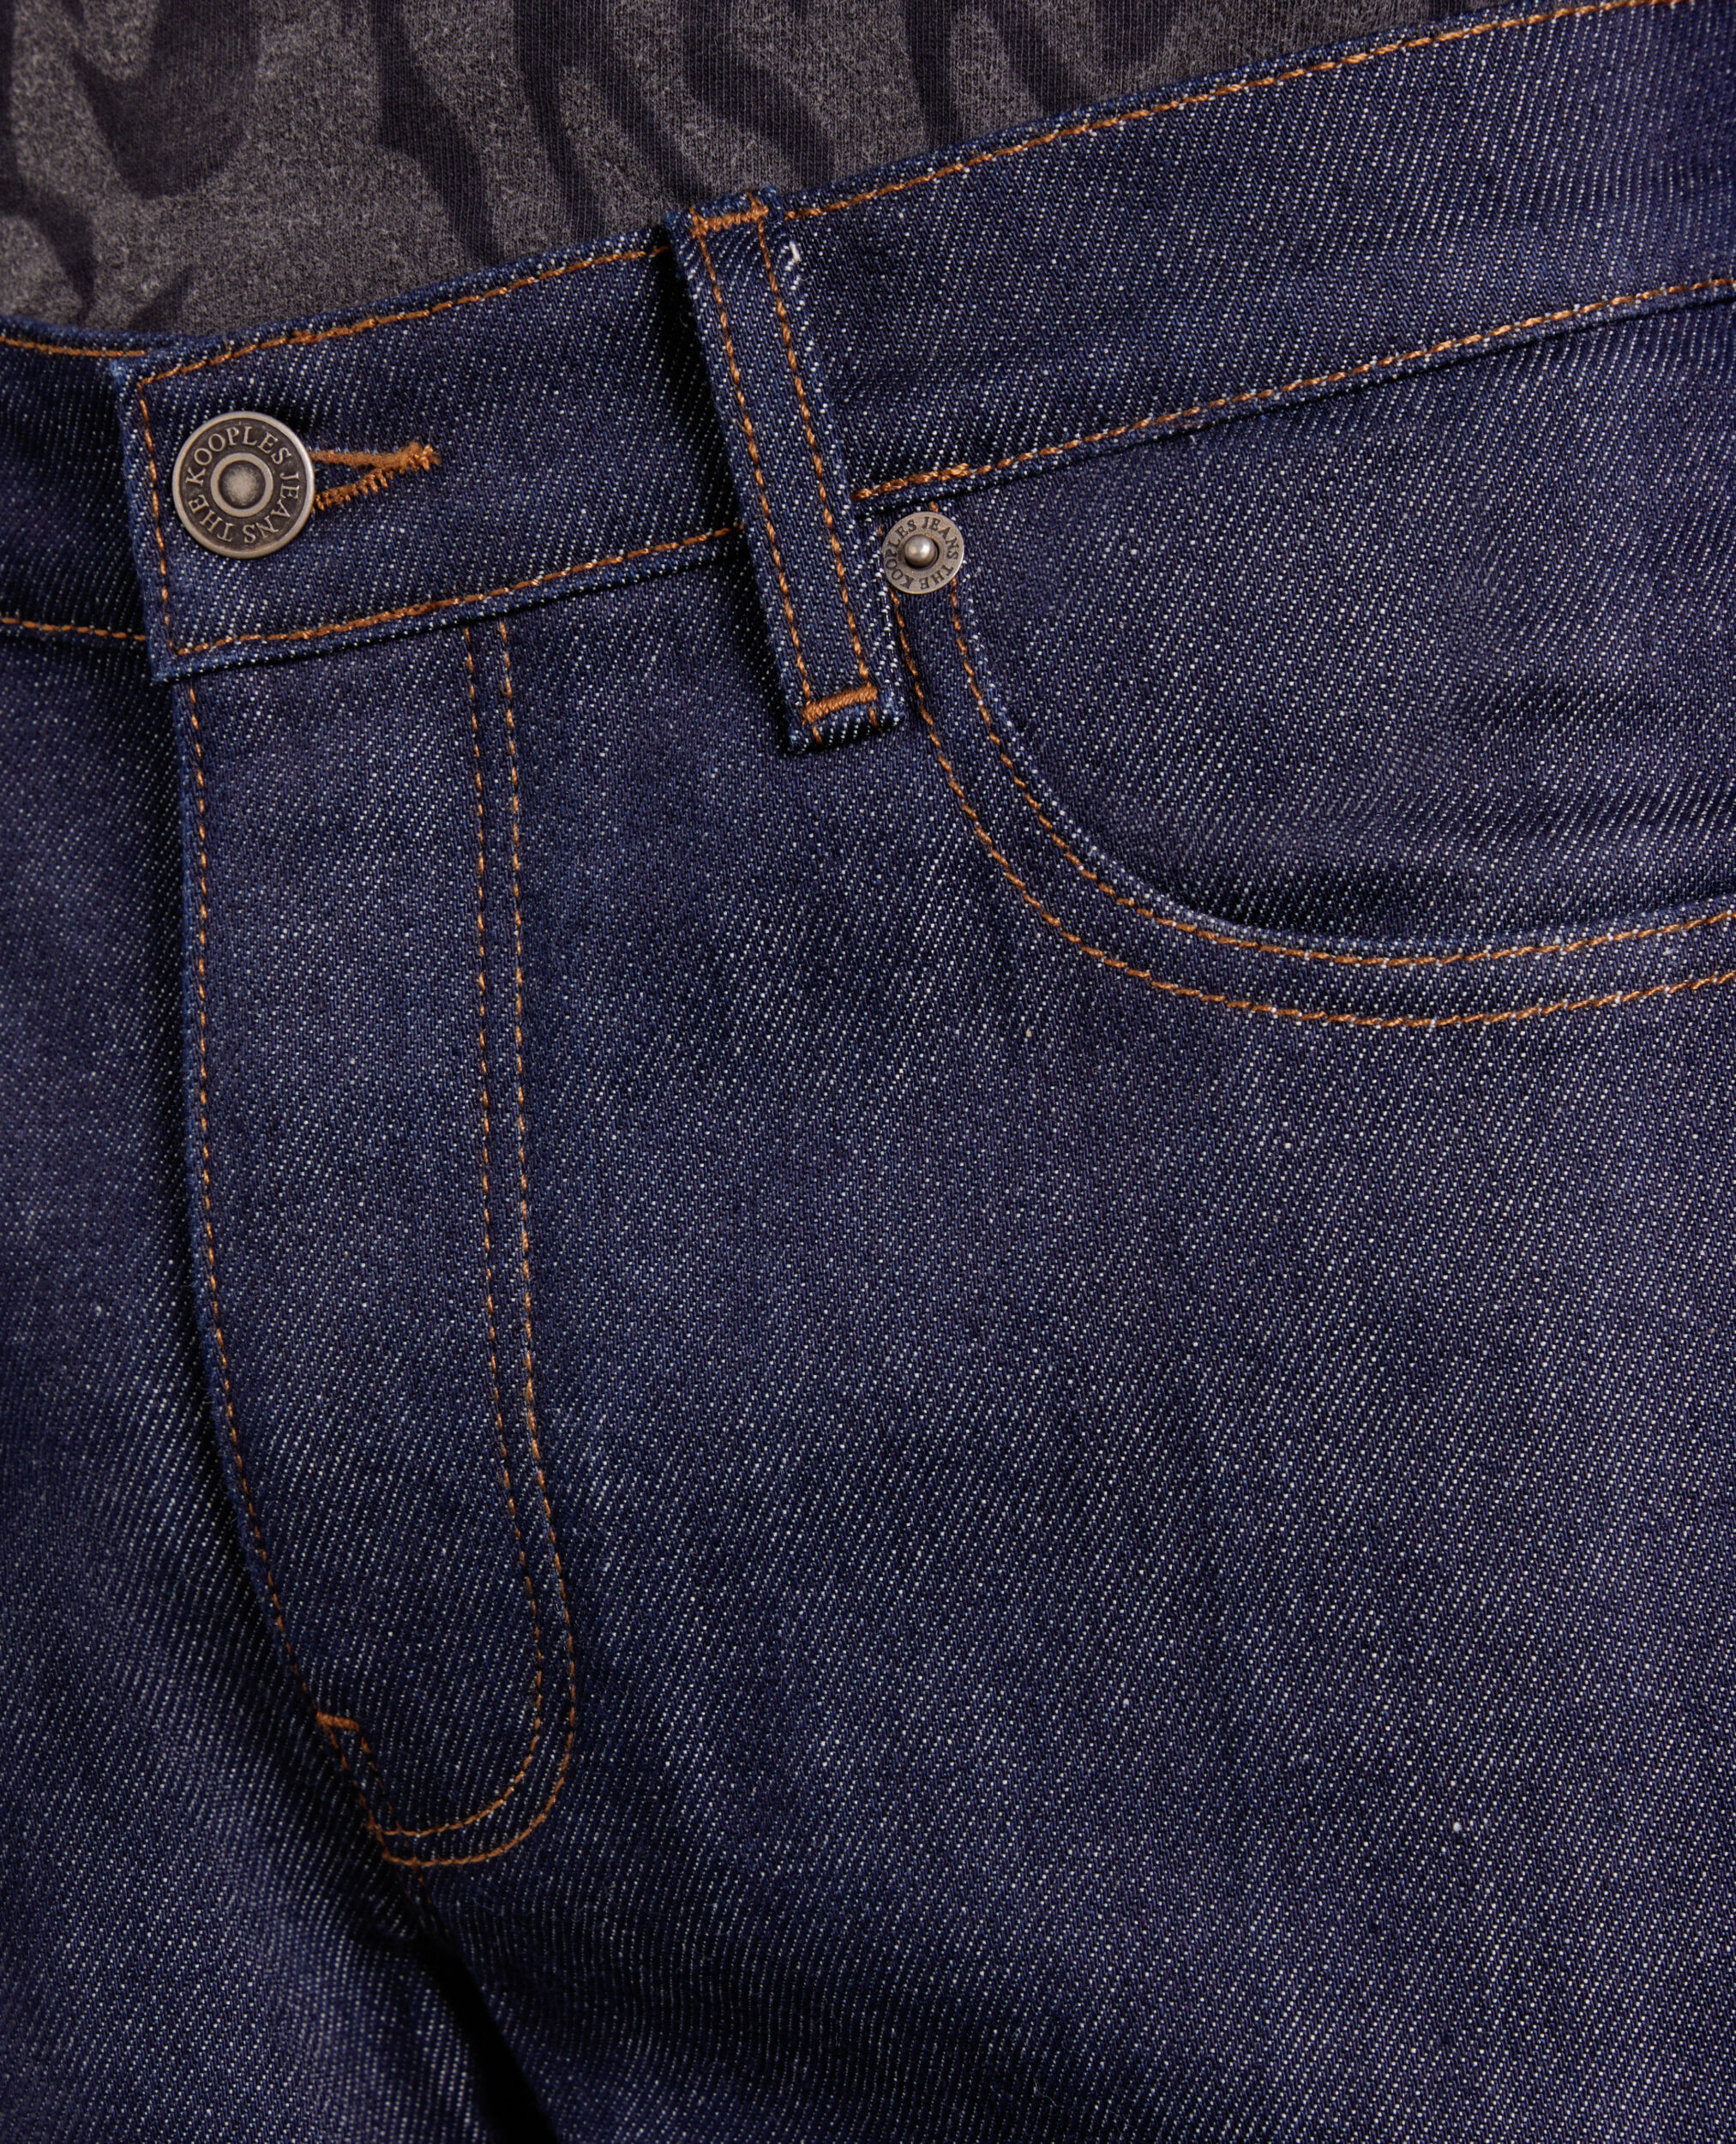 Blue jeans, BLUE BRUT, hi-res image number null